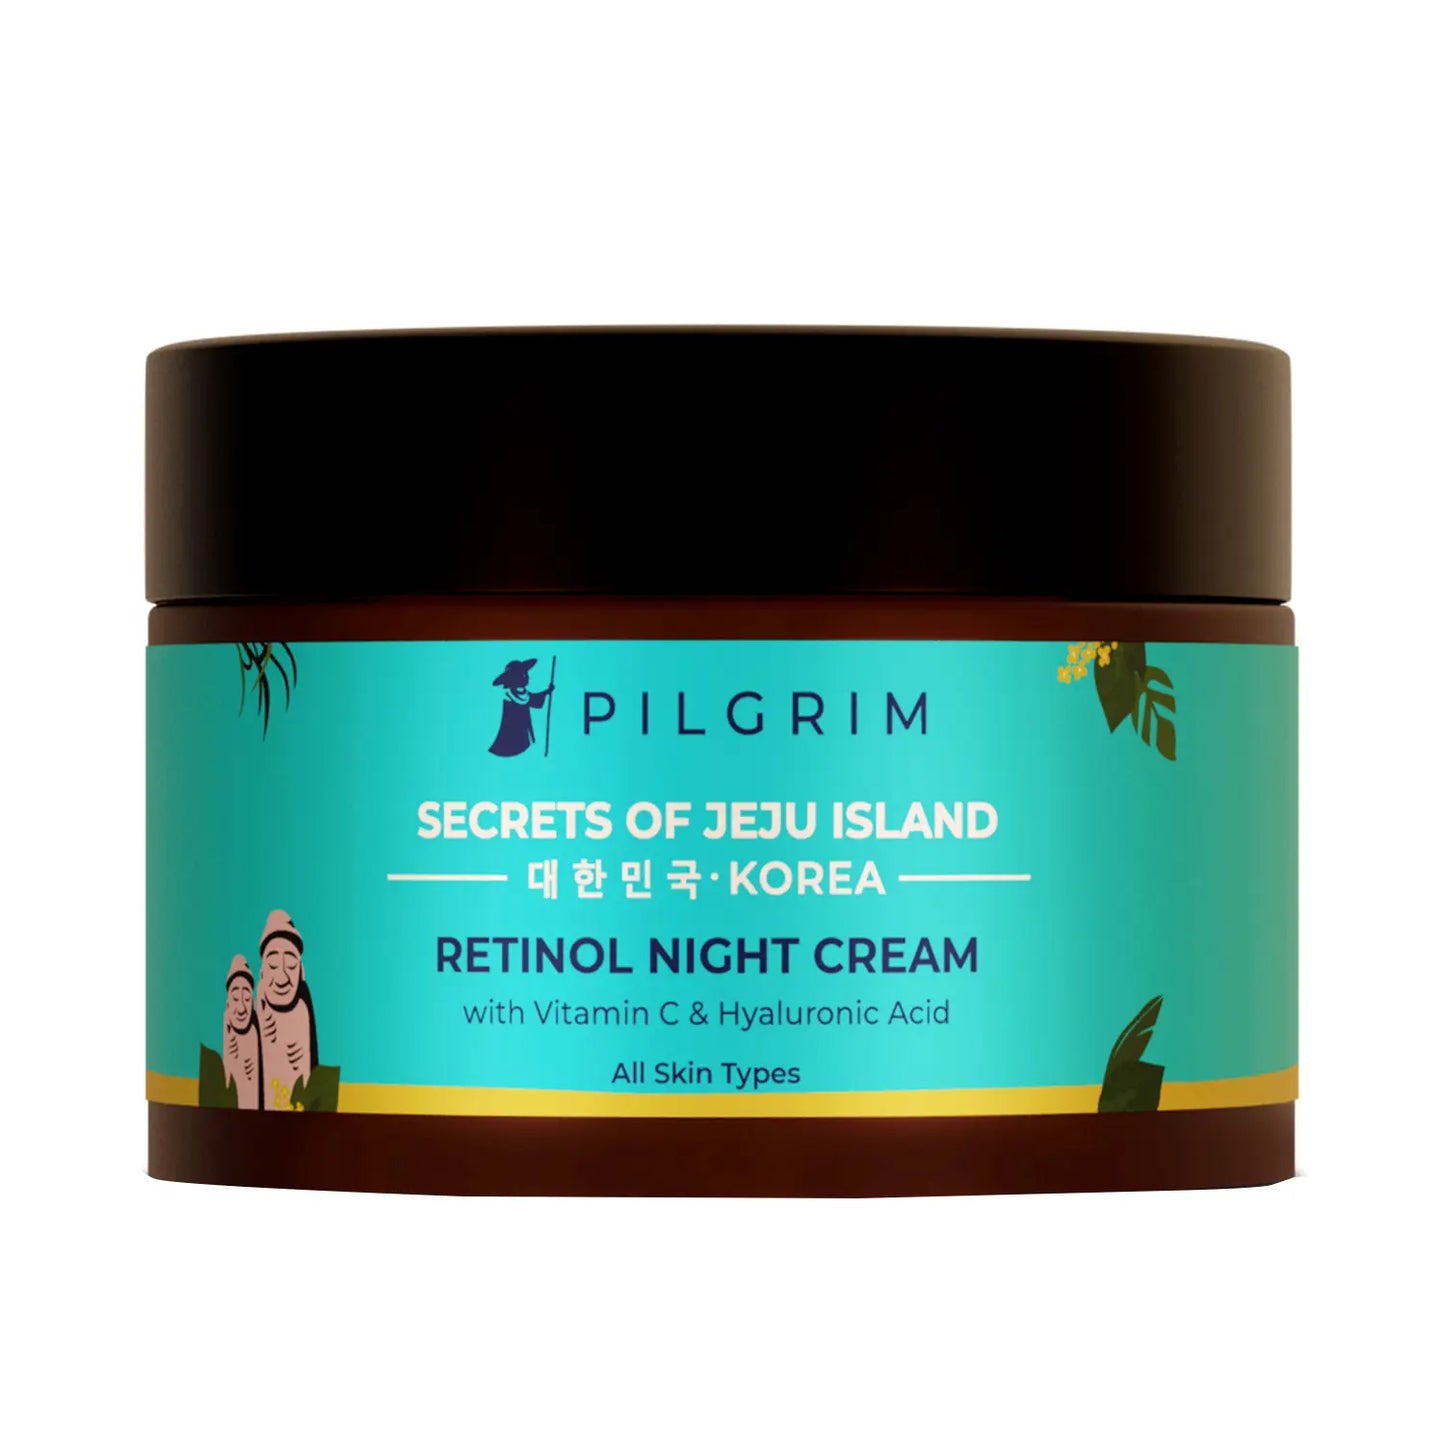 Pilgrim Retinol Night Cream With Vitamin C & Hyaluronic Acid (50g)